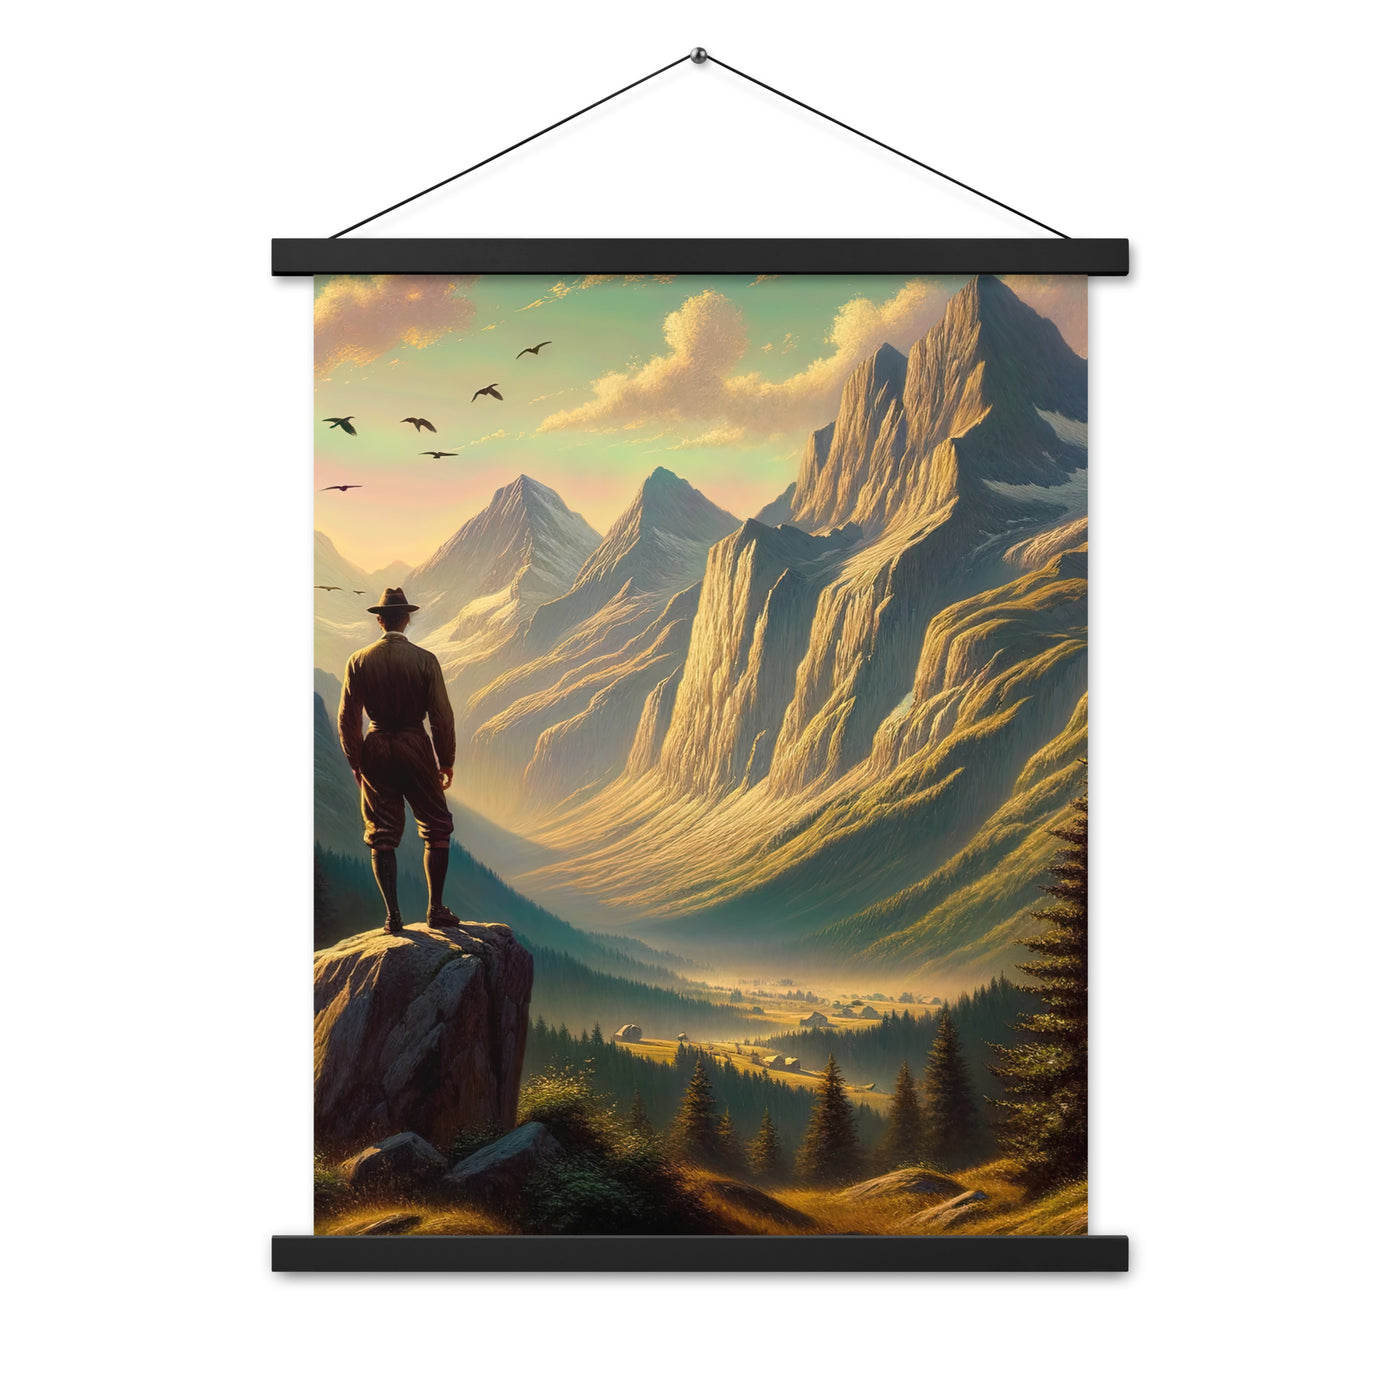 Ölgemälde eines Schweizer Wanderers in den Alpen bei goldenem Sonnenlicht - Premium Poster mit Aufhängung wandern xxx yyy zzz 45.7 x 61 cm